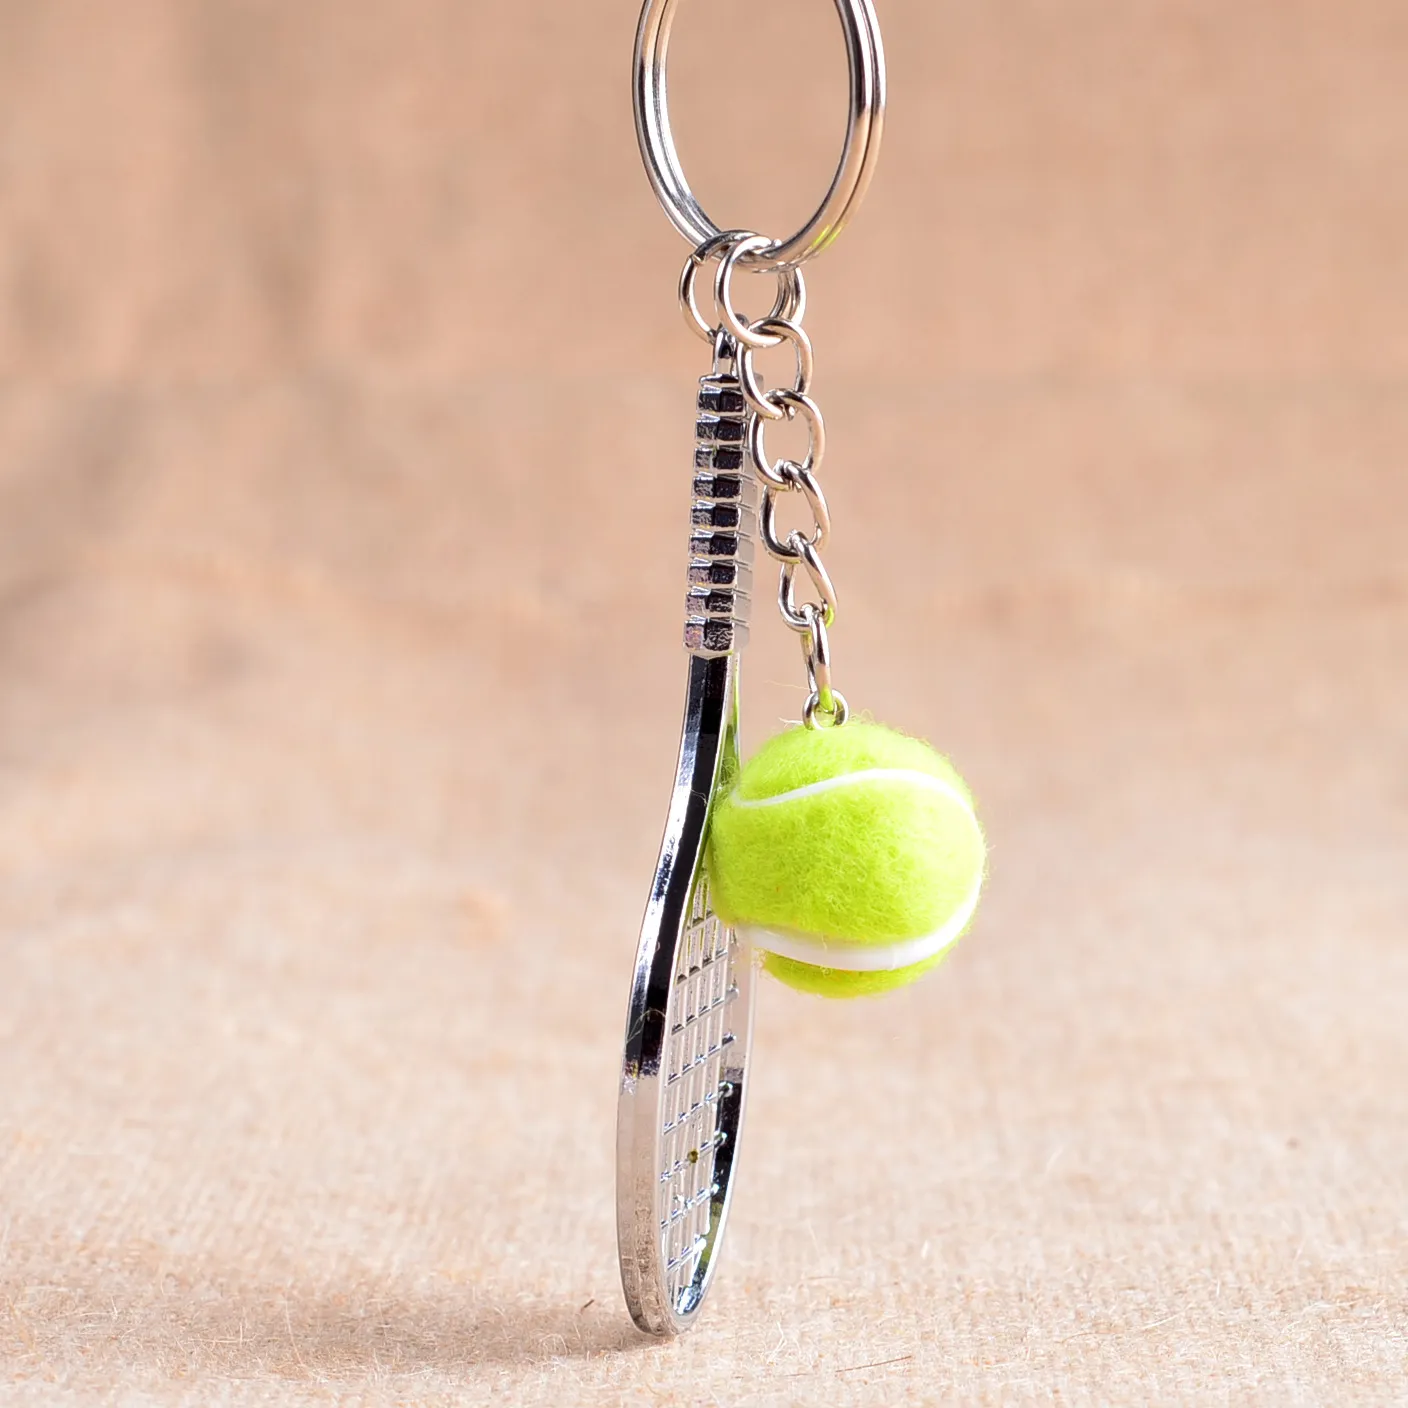 Mini portachiavi racchetta da tennis di alta qualità Portachiavi racchetta in rete metallica personalizzabile Portachiavi KR163 ordine misto 20 pezzi molto